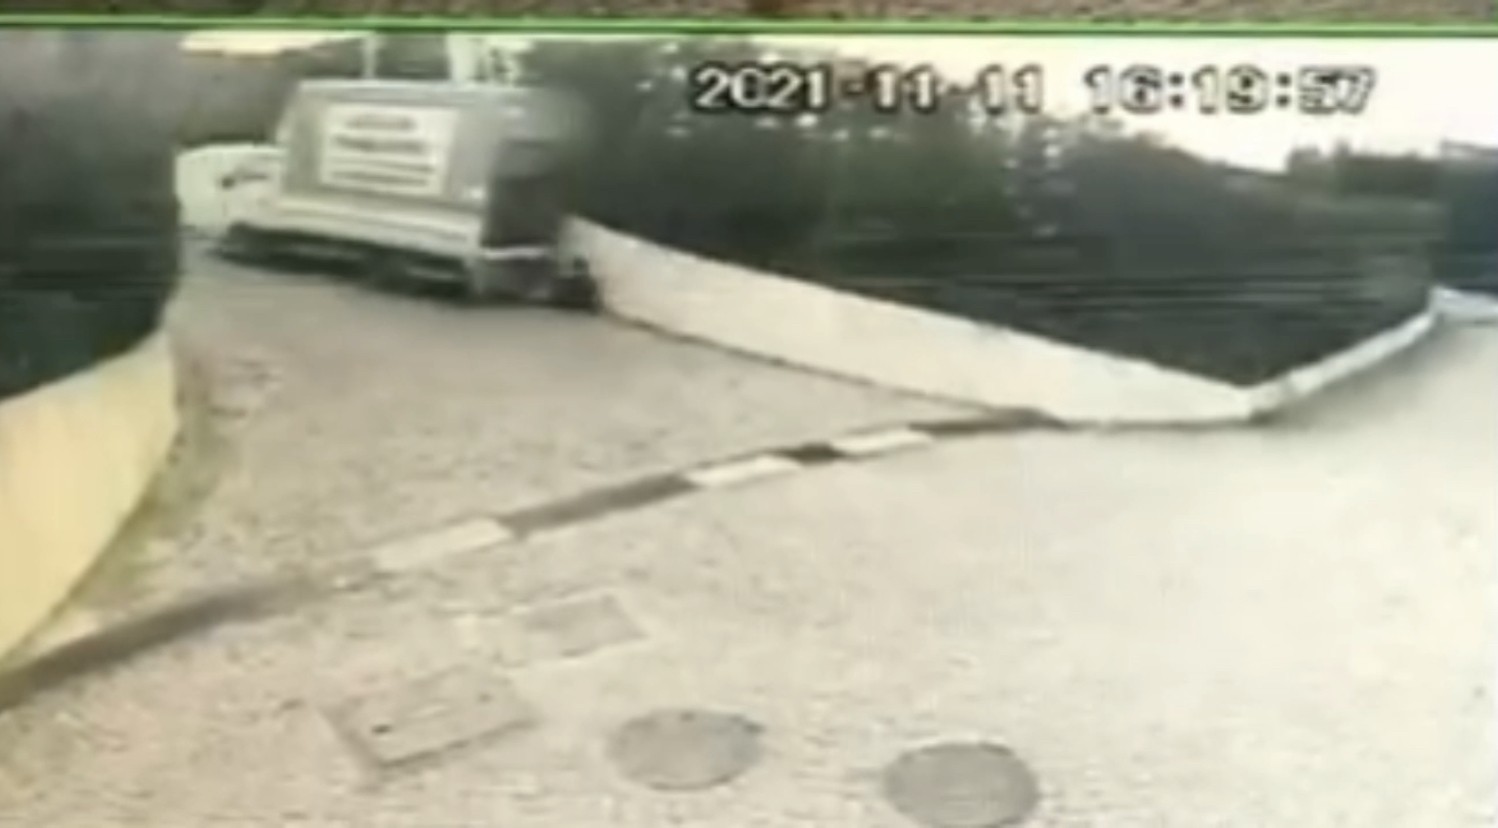 El frenini çekmeyi unutan sürücü kamyonetin altında kalmıştı: Feci olay kameraya yansıdı #istanbul